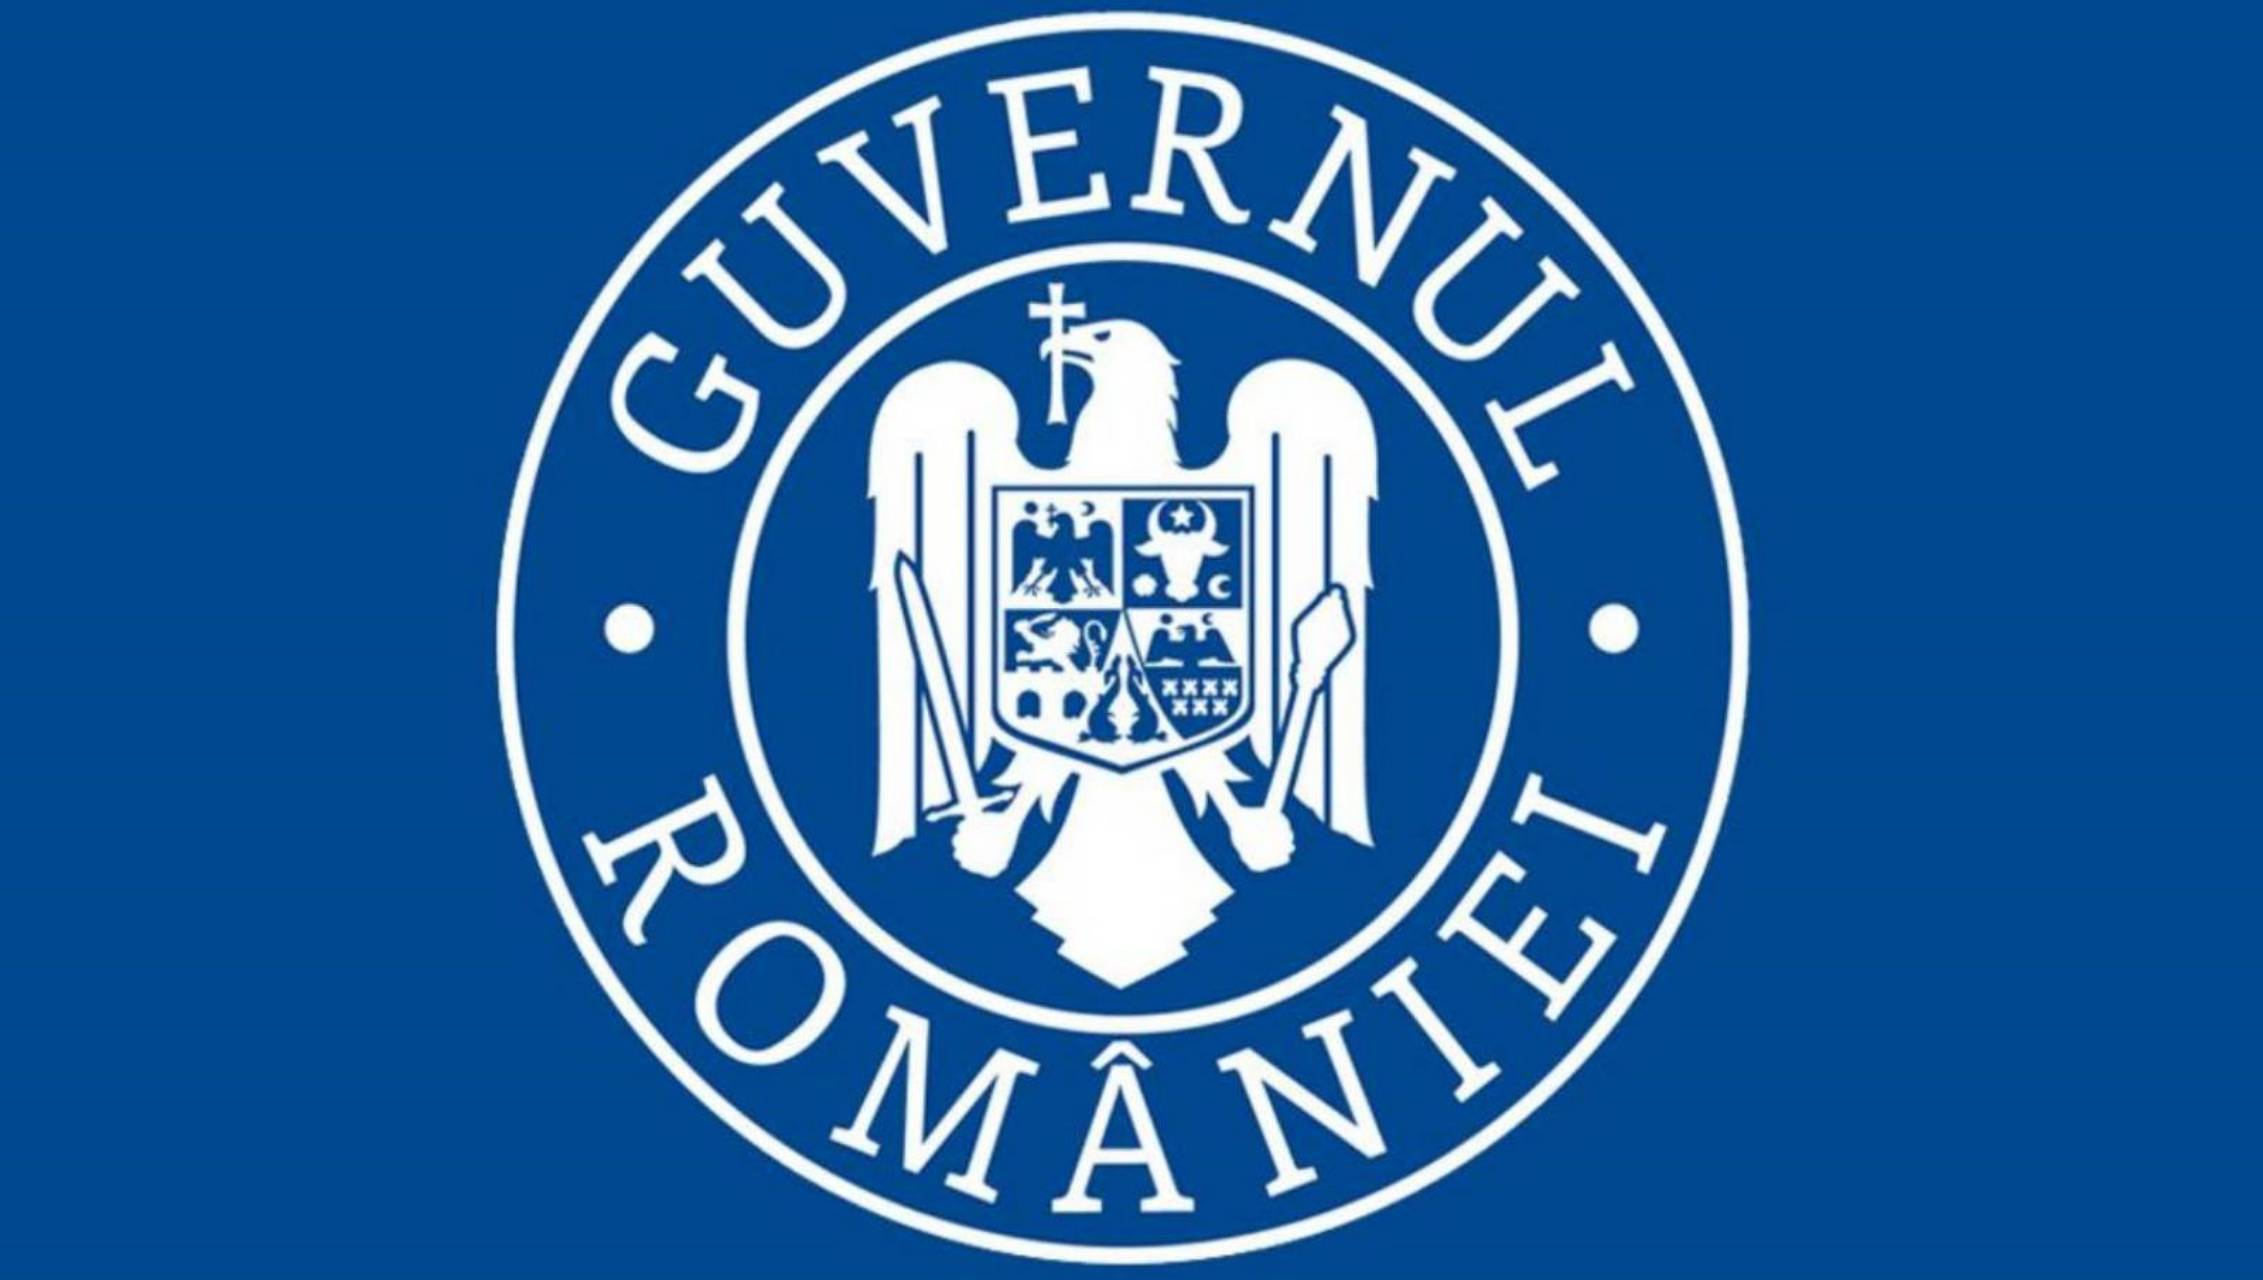 De Roemeense regering geeft prioriteit aan het coronavirusvaccin